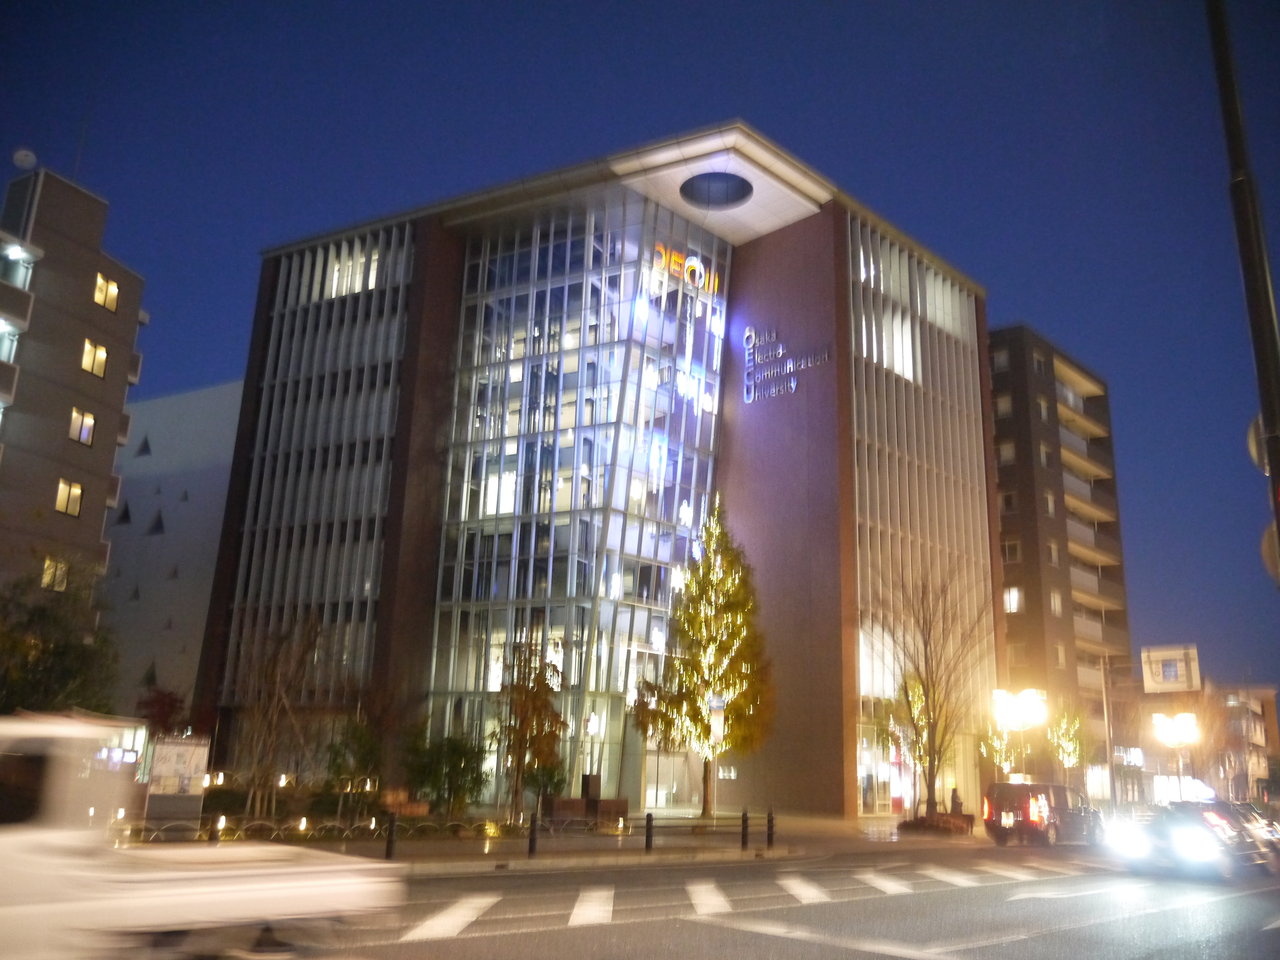 大阪電気通信大学駅前キャンパスのイルミネーション17 人型の造形が4コマ送りで上昇している光景が近未来的 寝屋川つーしん